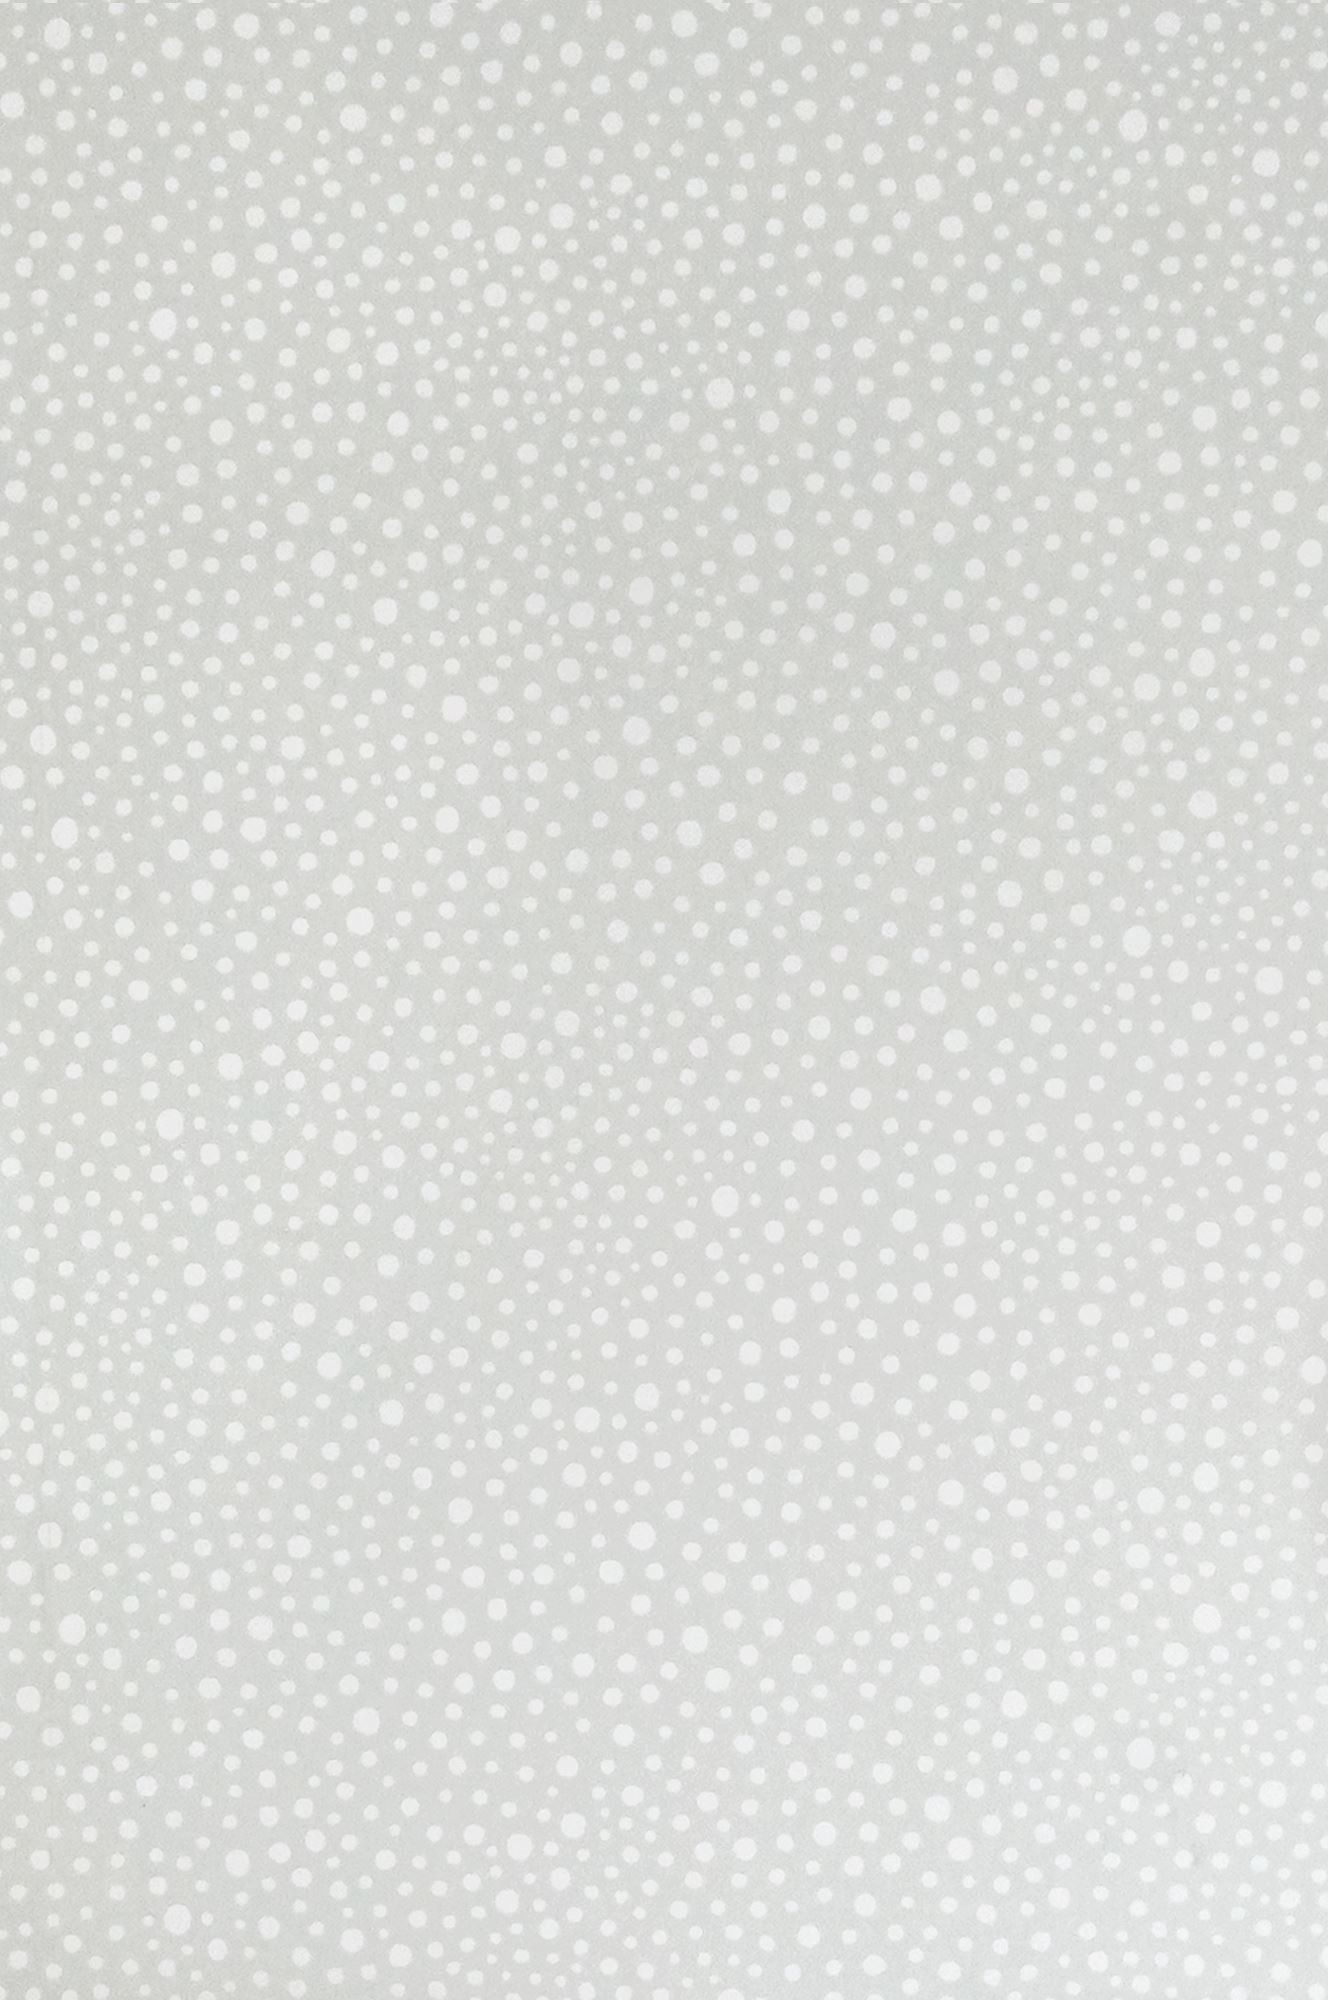 1328x2000 Dots wallpaper by Majvillan